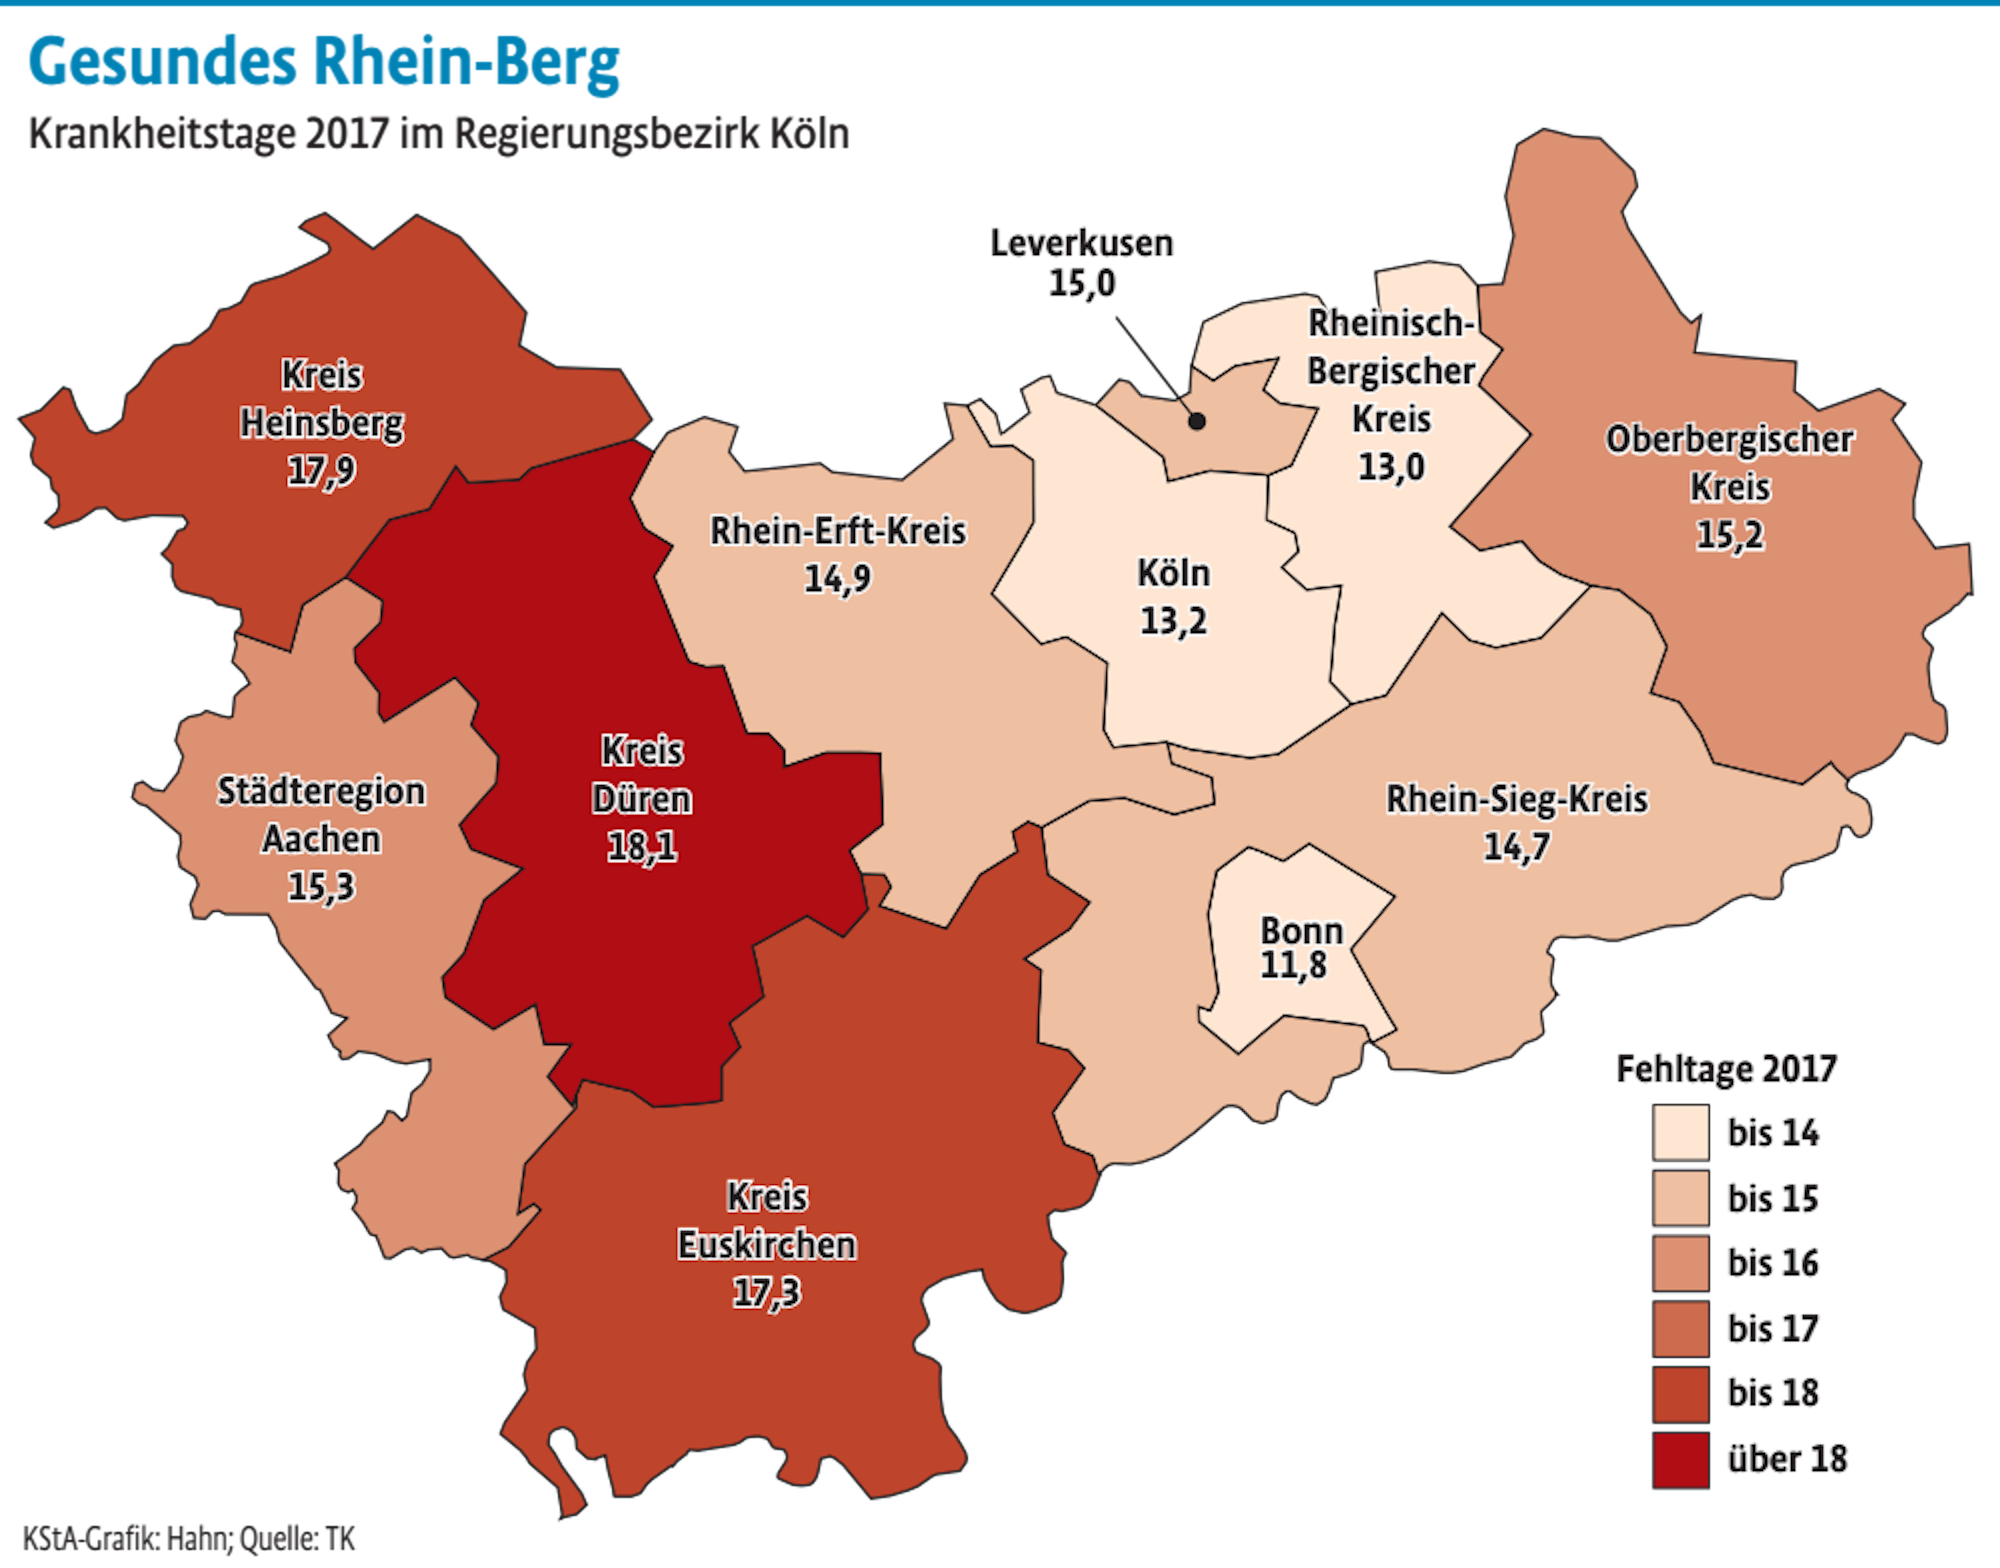 NRW-weit liegt Rhein-Berg auf Platz 3 hinter den Großstädten Bonn und Düsseldorf (12,4).